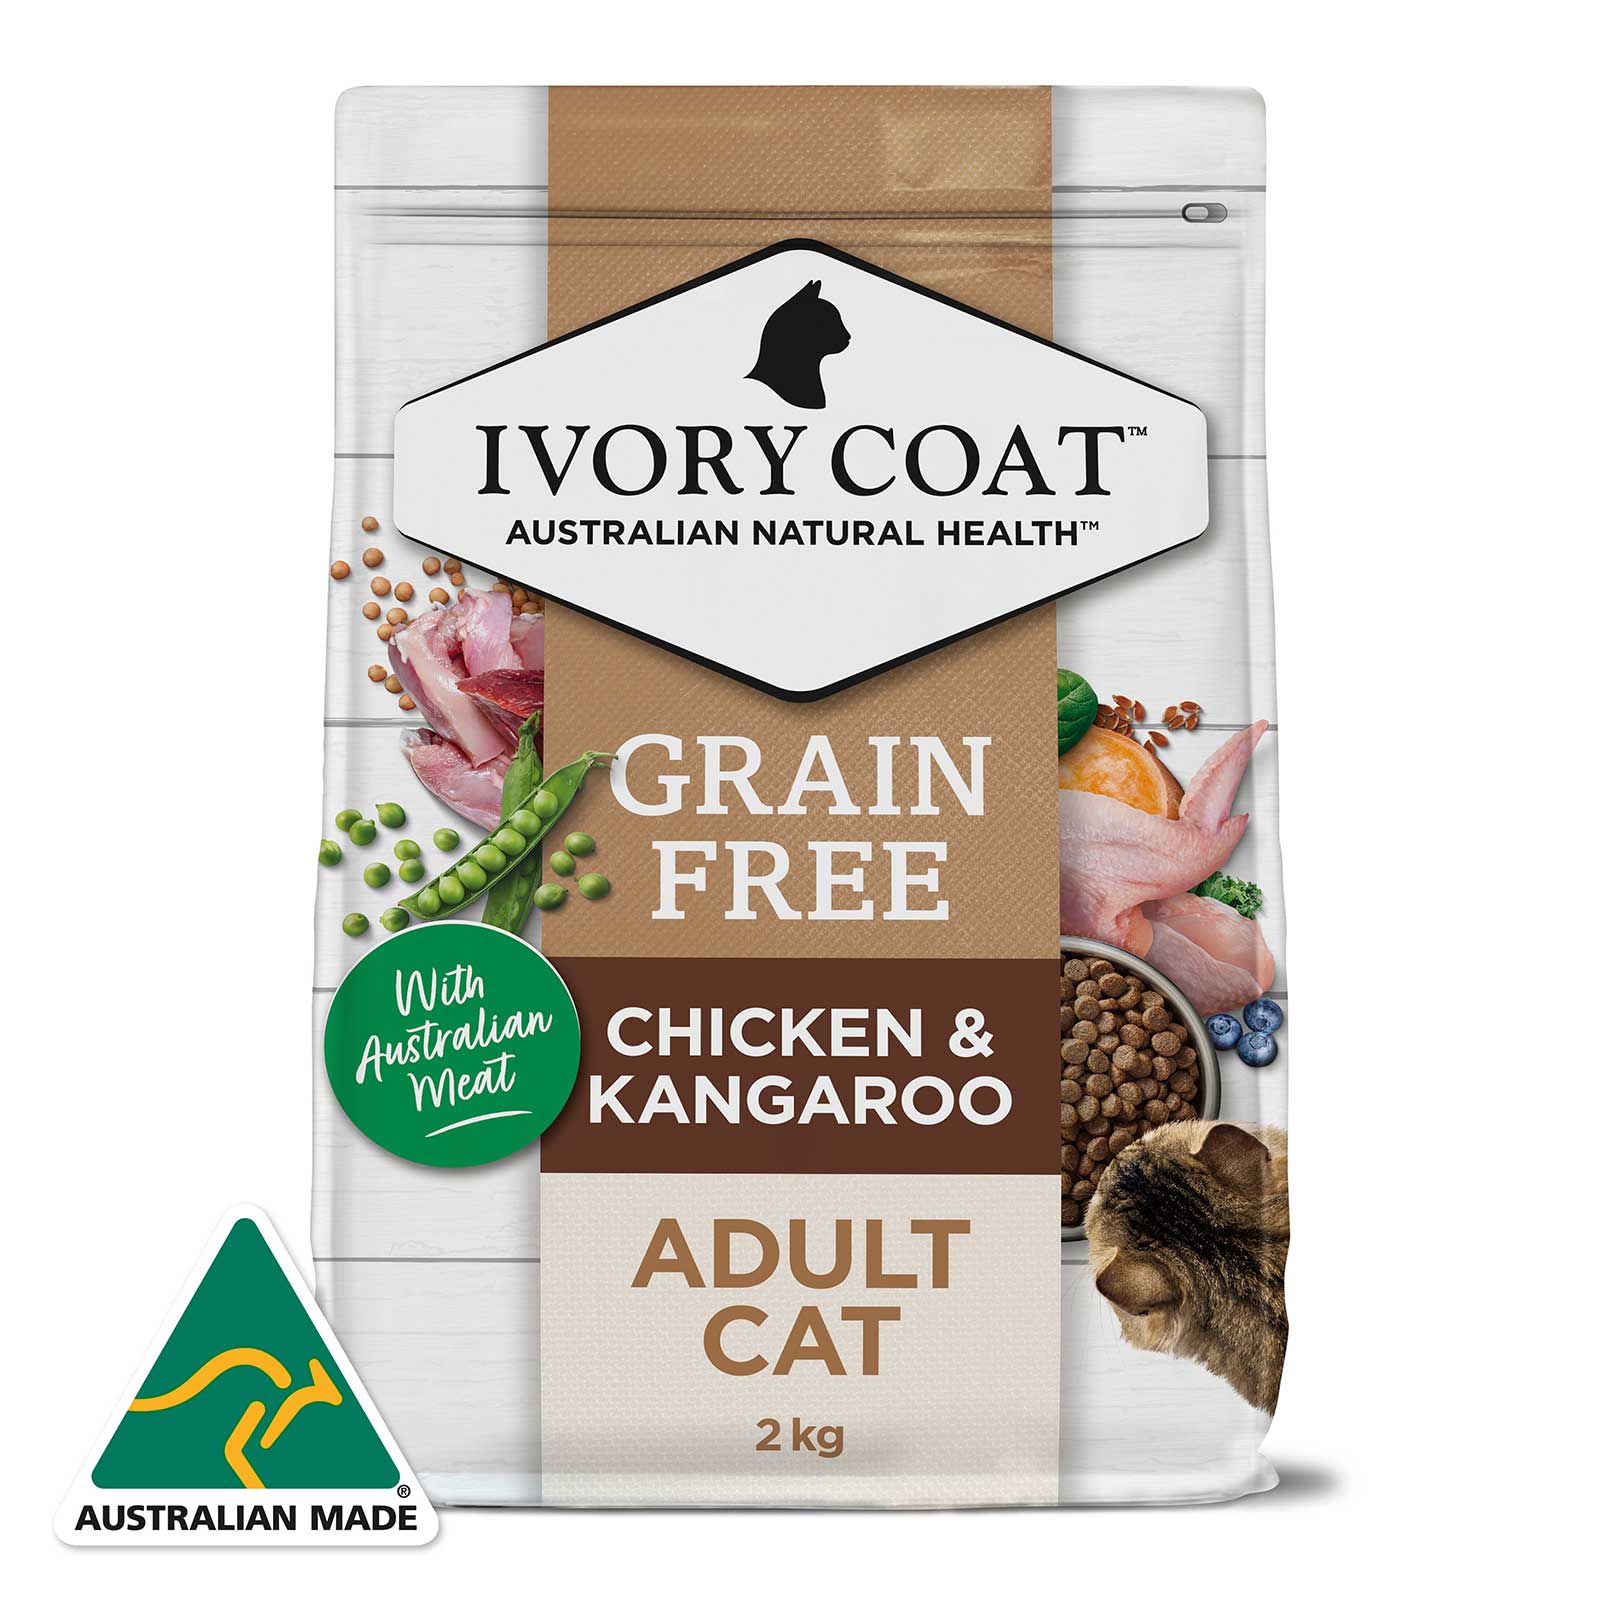 Ivory Coat Grain Free Cat Food Adult Indoor Chicken & Kangaroo